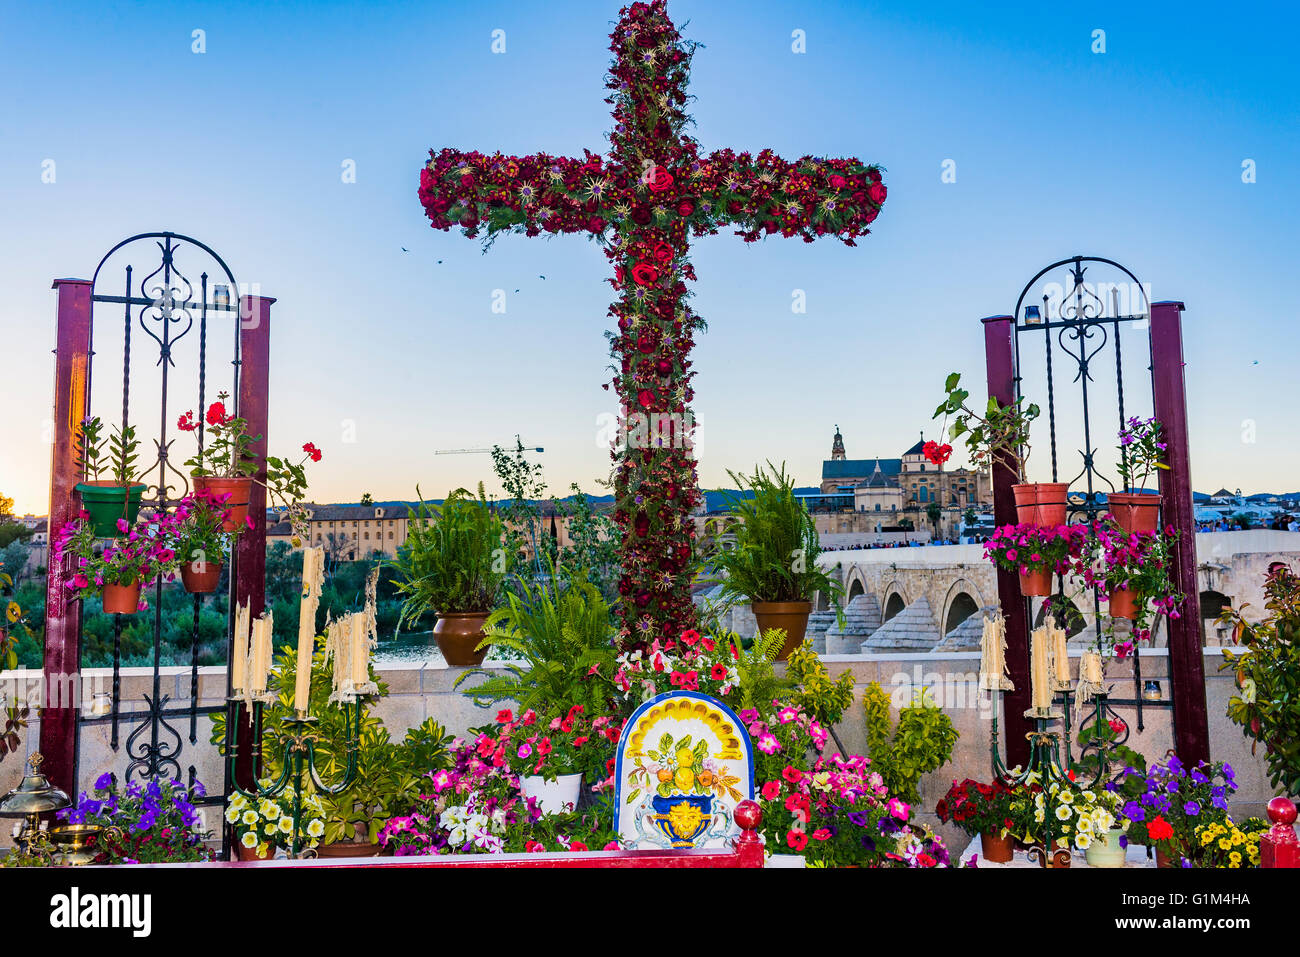 Las cruces de mayo cordoba fotografías e imágenes de alta resolución - Alamy